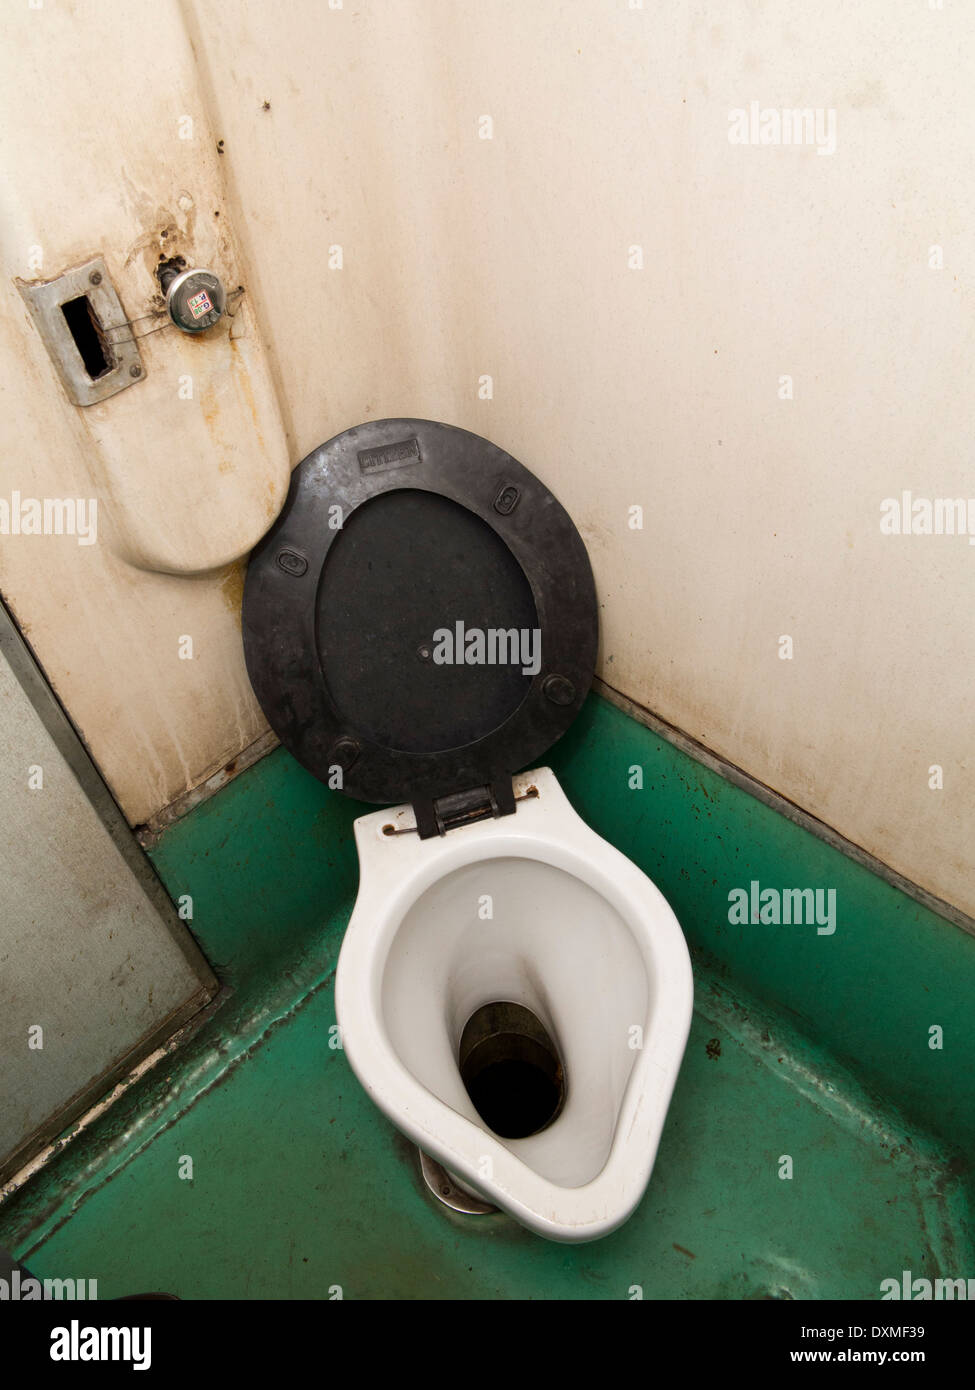 L'Inde, les voyages en train, 2e classe - niveau 2 air conditionné 2A transport toilettes intérieur, s'asseoir sur les toilettes de style occidental Banque D'Images